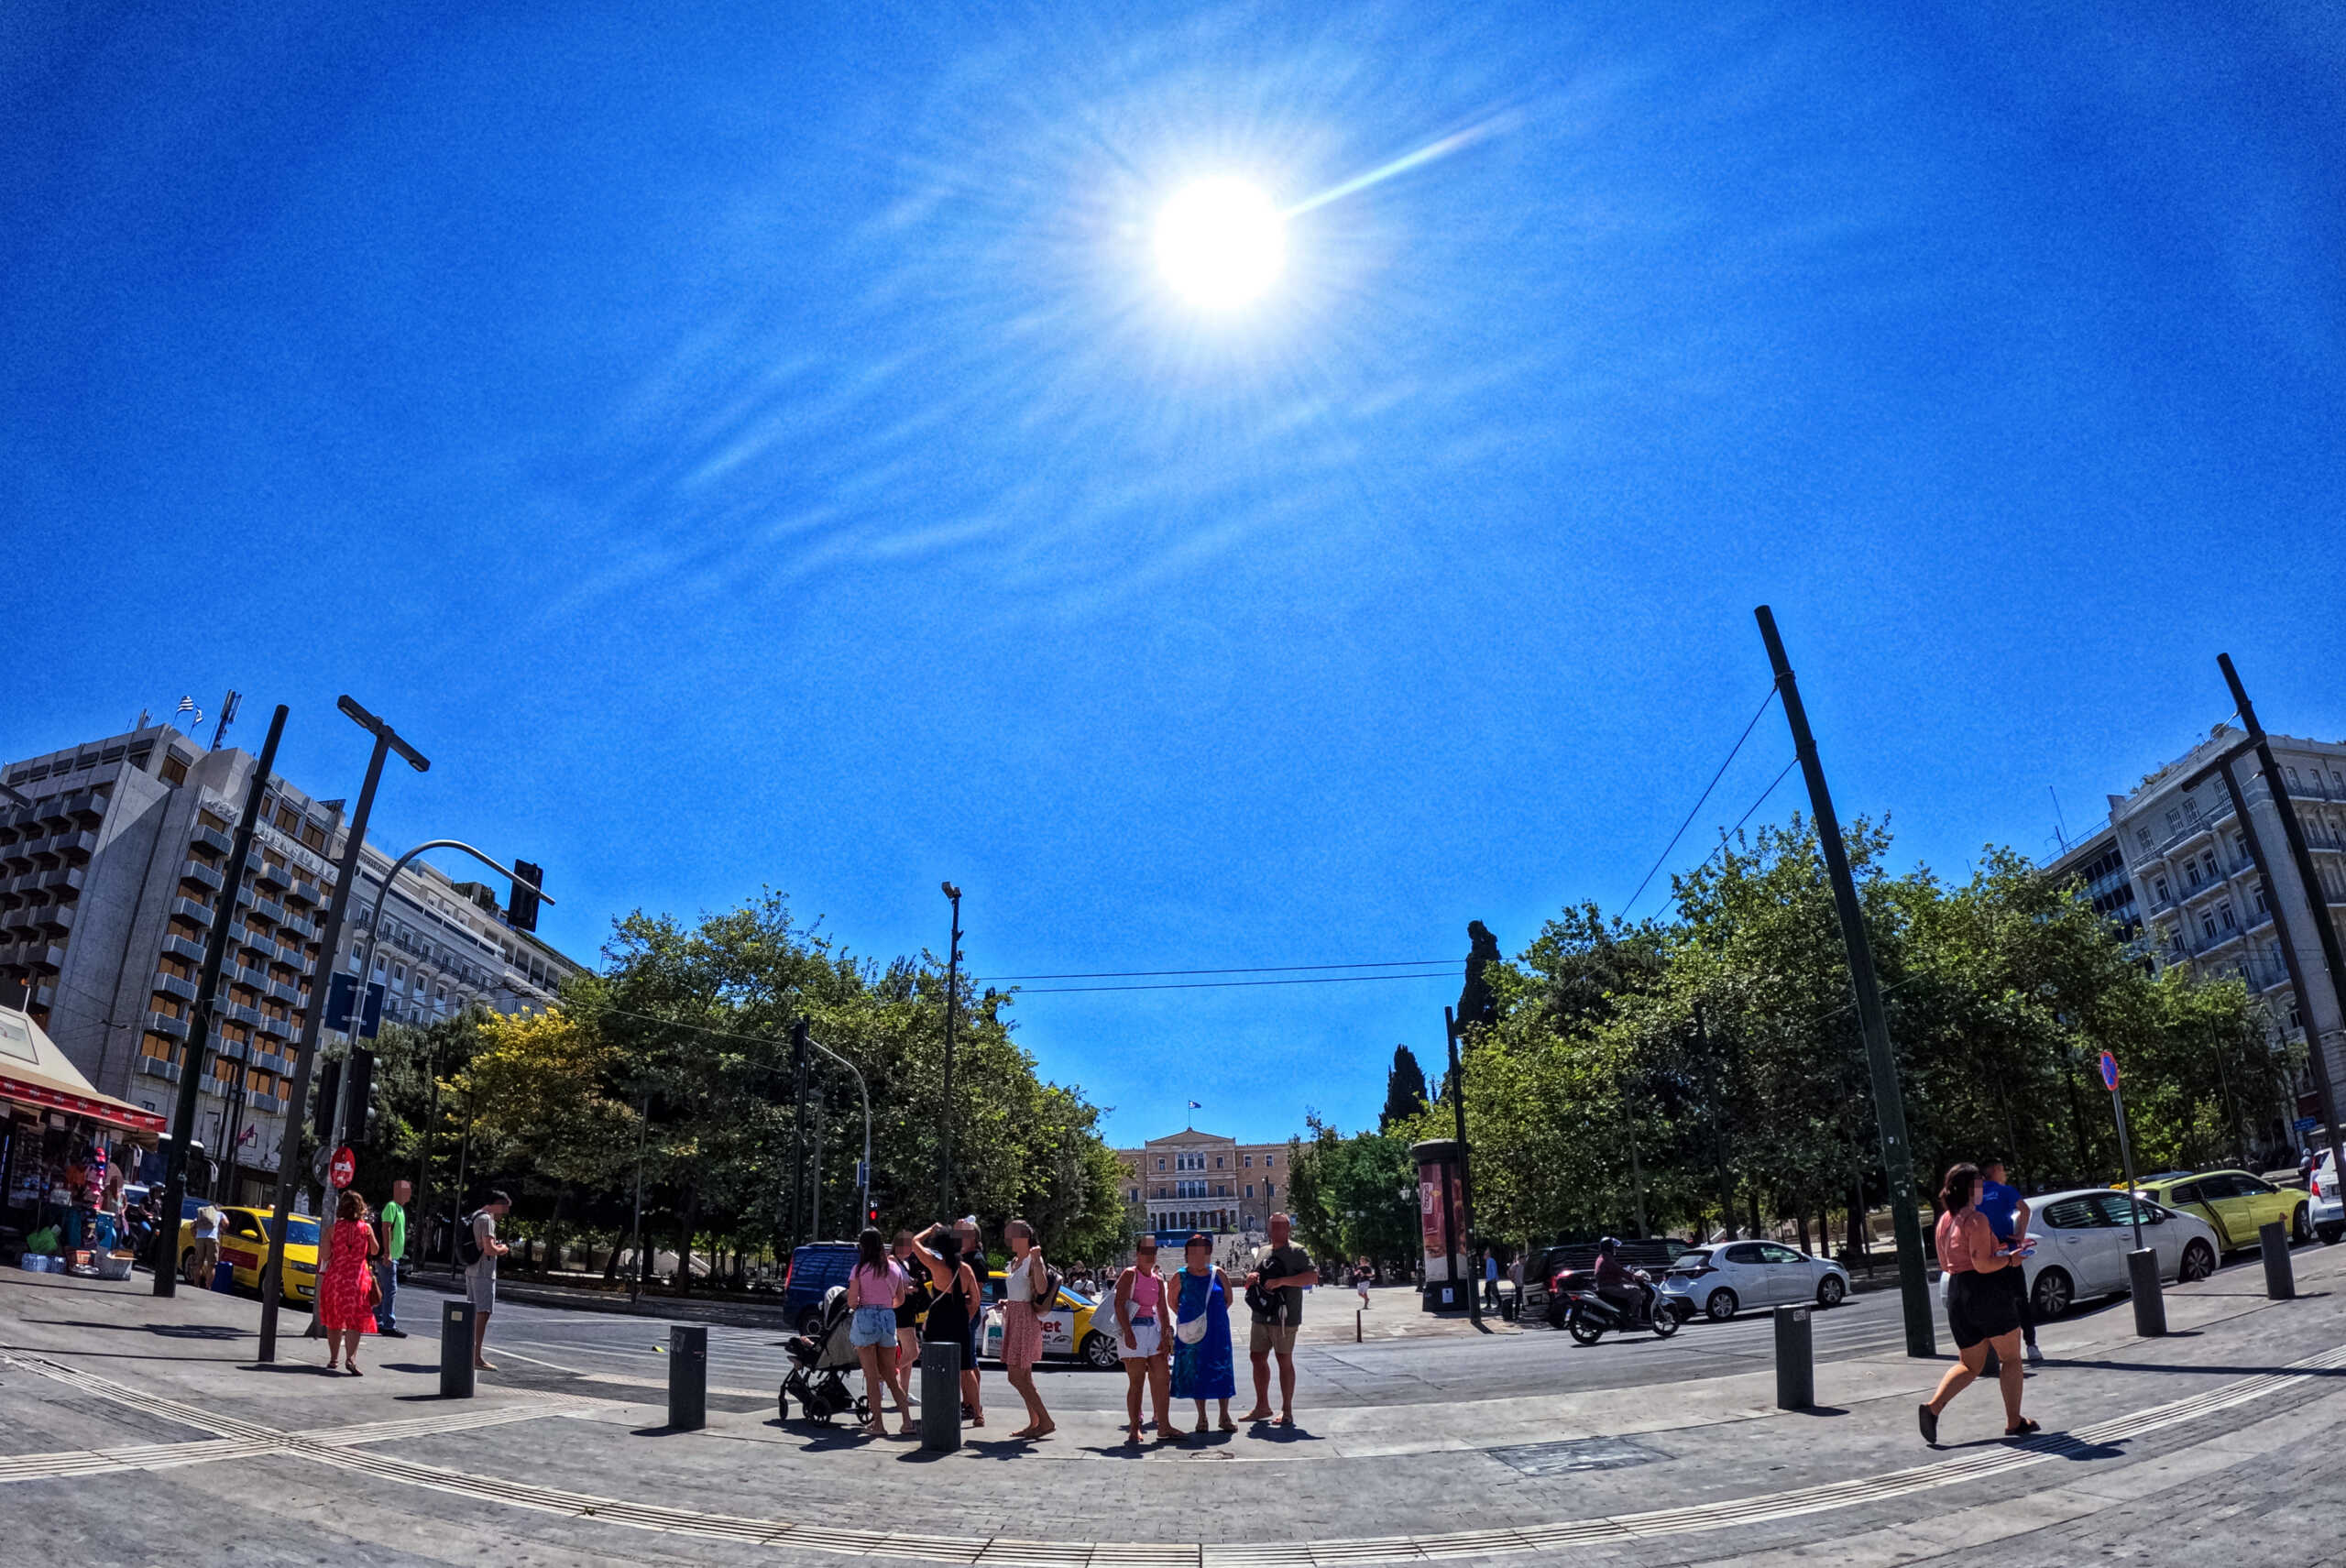 Στην Αθήνα η μέση θερμοκρασία θα αυξηθεί κατά 3,5 βαθμούς Κελσίου μέχρι το 2070